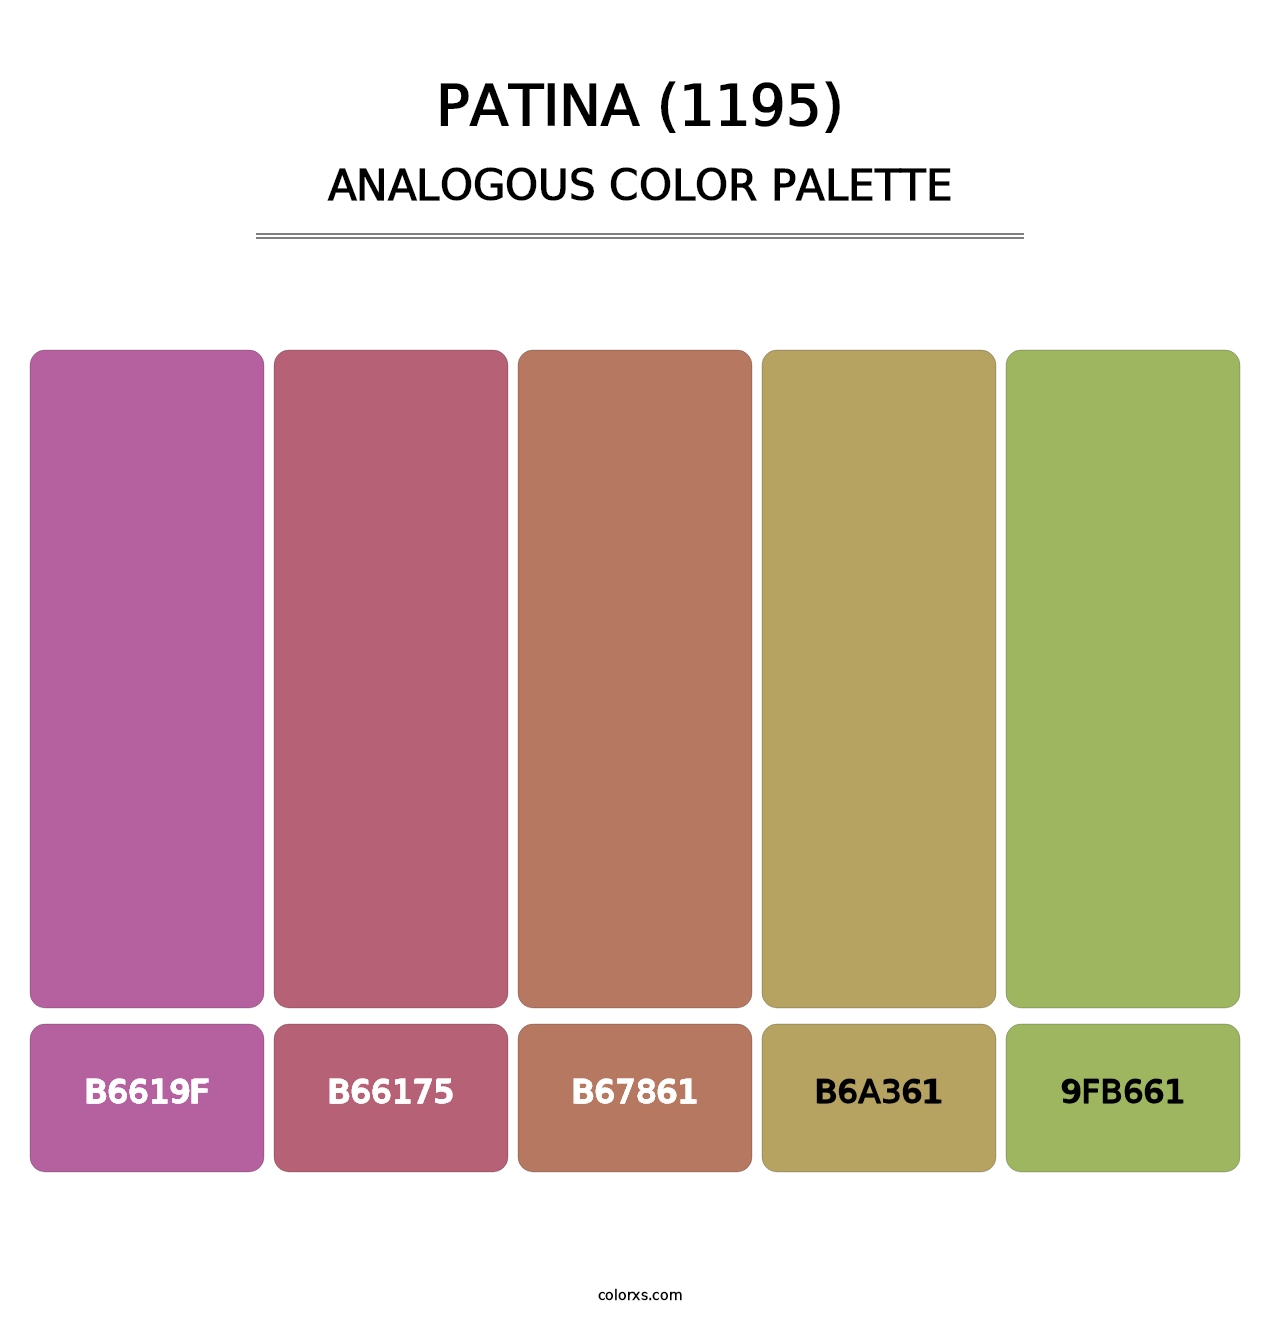 Patina (1195) - Analogous Color Palette